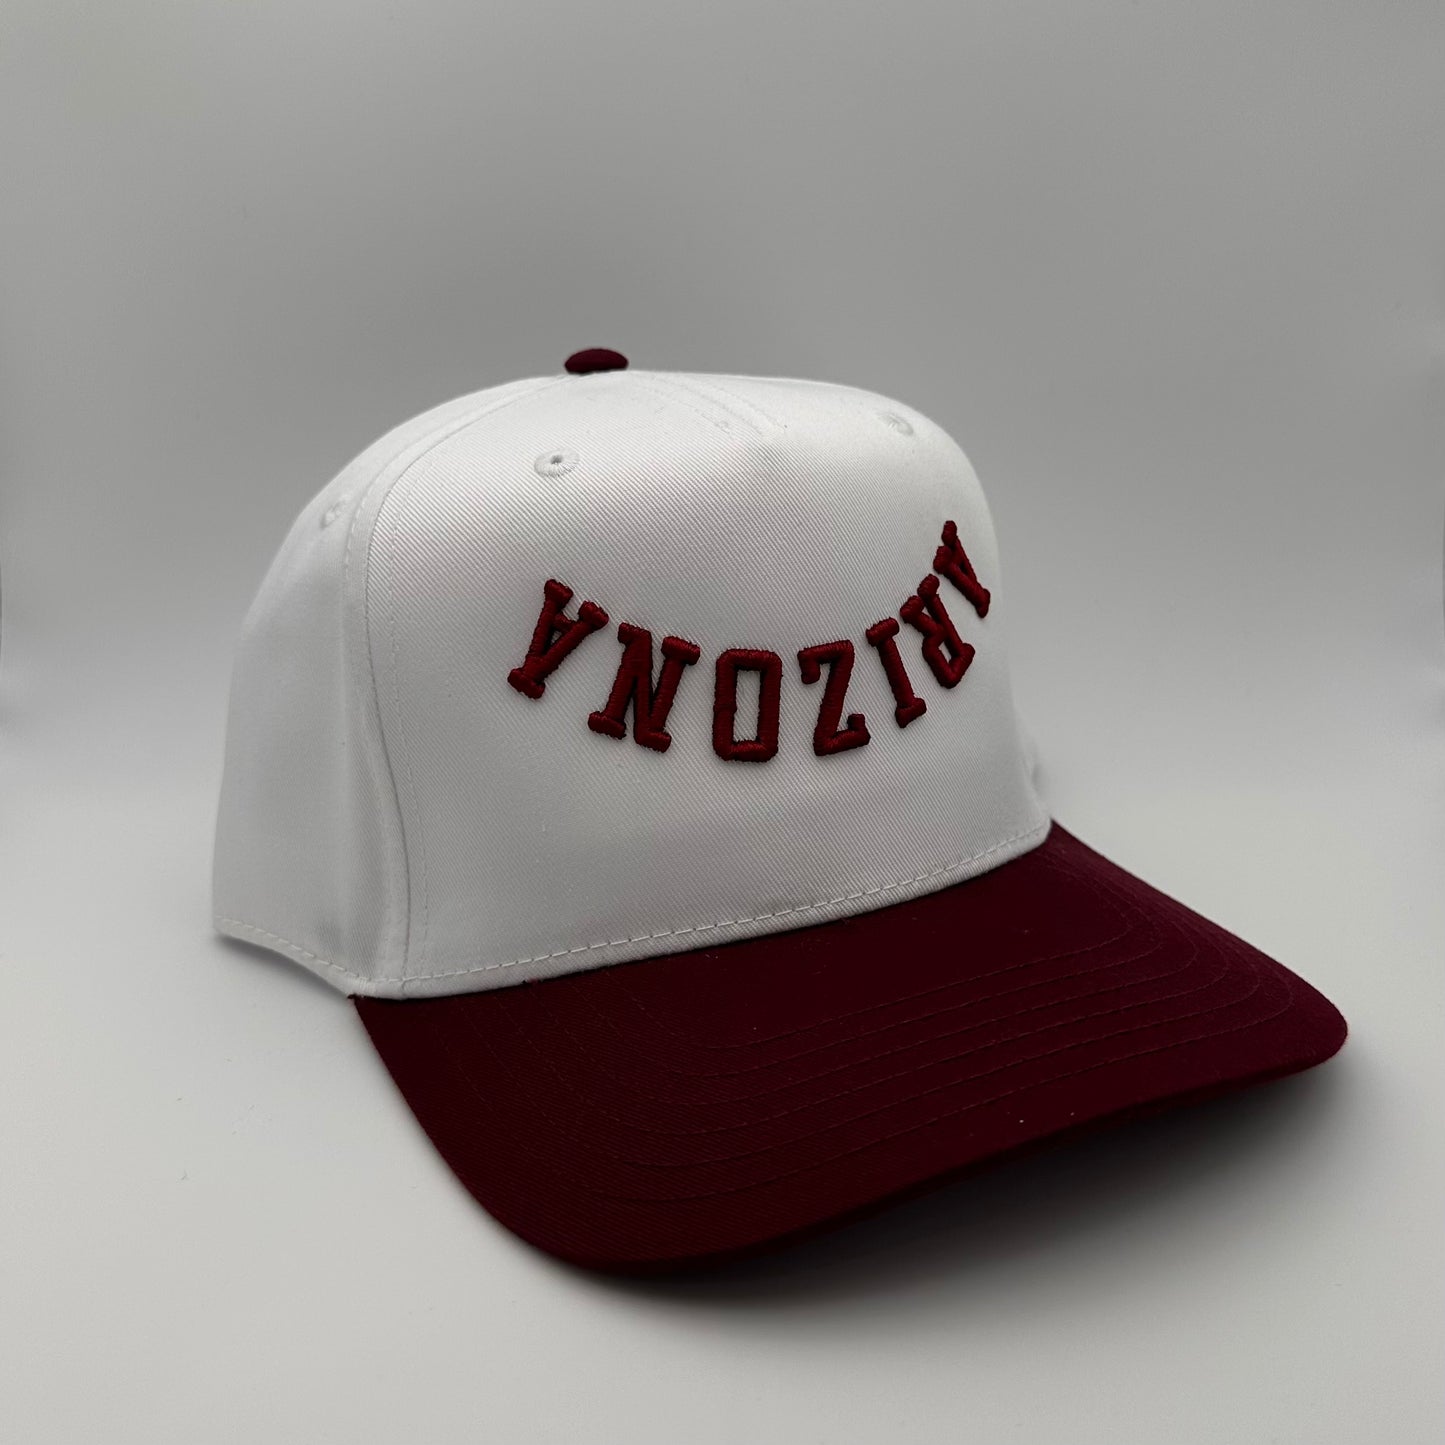 The Arizona Hat - White/Maroon